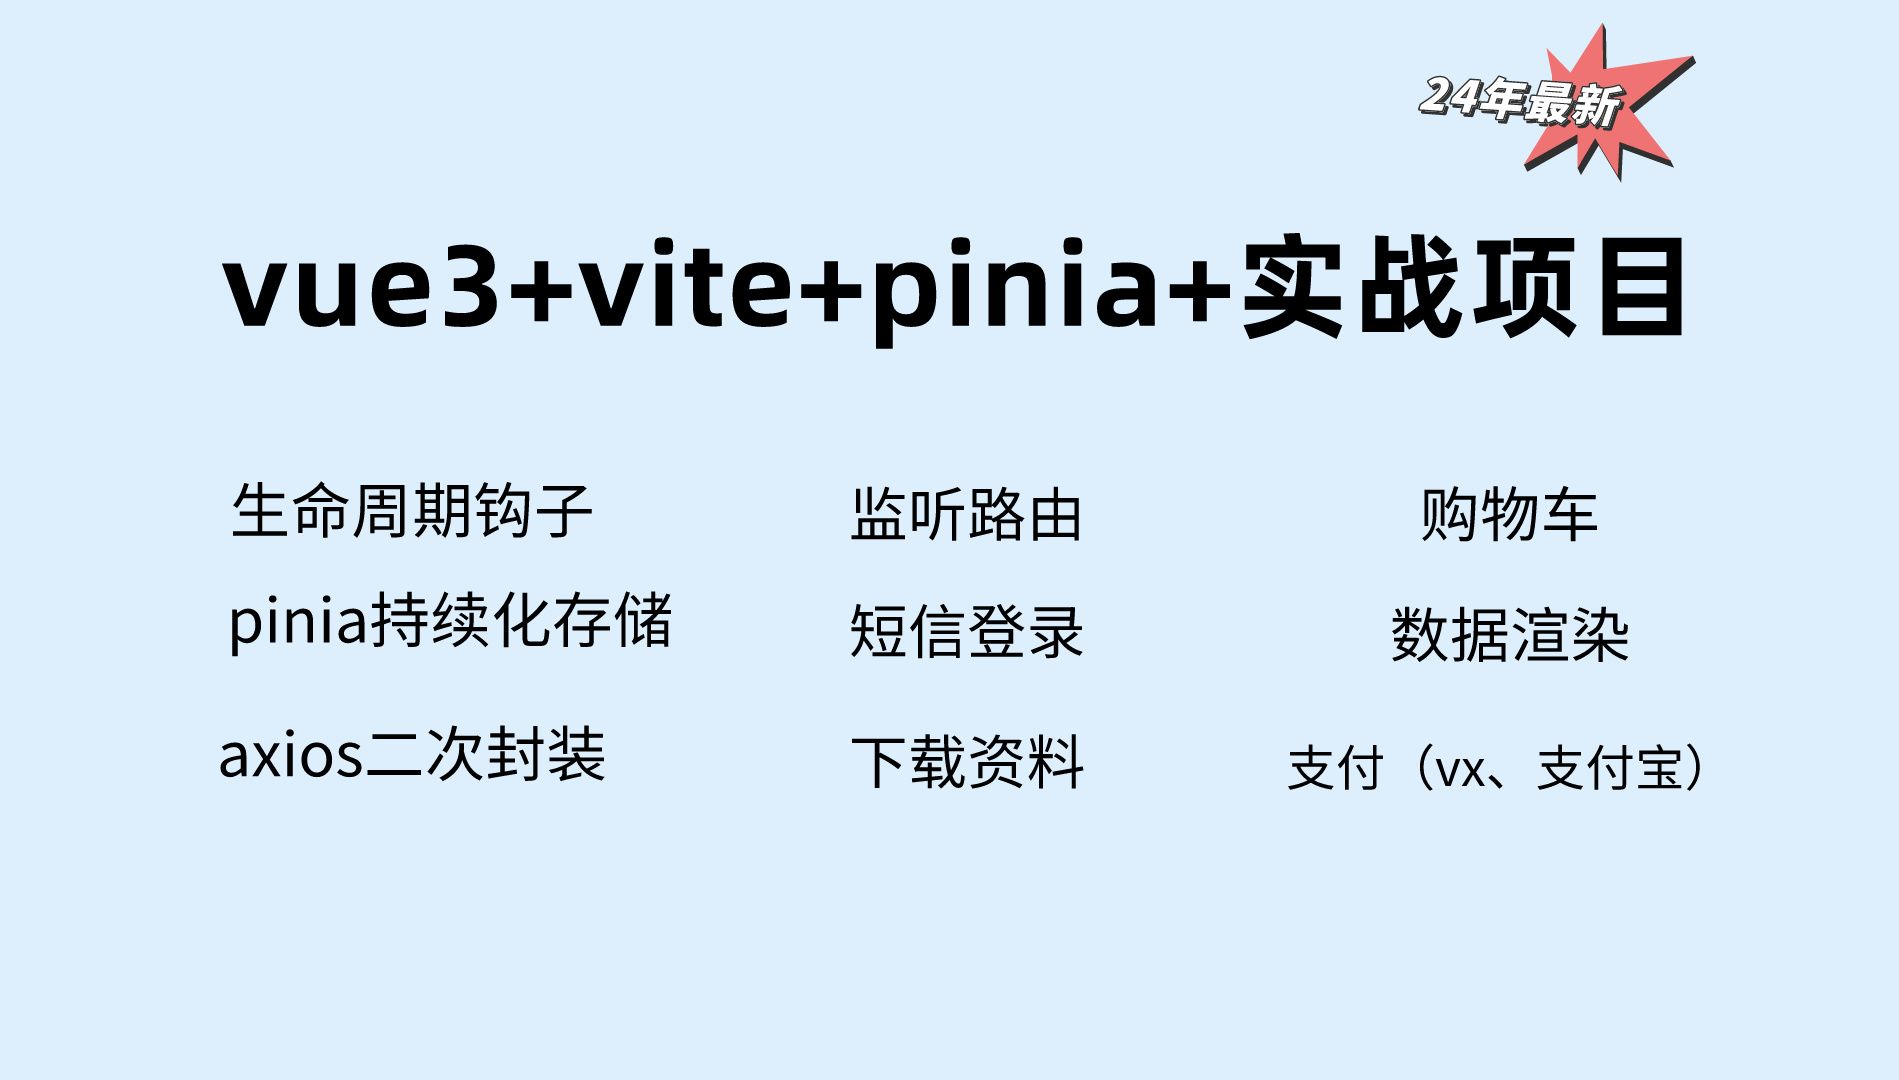 24年vite+vue3+pinia企业实战项目（生命周期钩子、pinia持续化存储、axios二次封装、渲染数据、购物车、短信登录、vx/支付宝支付）